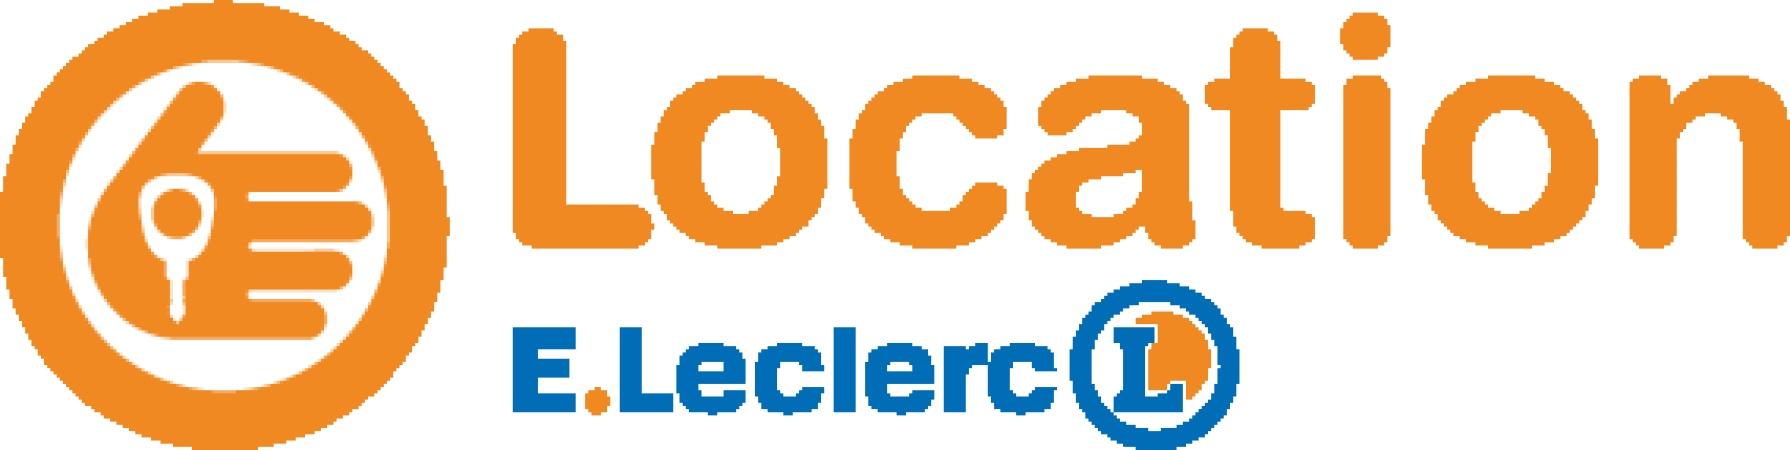 E.leclerc Station Service Mâcon